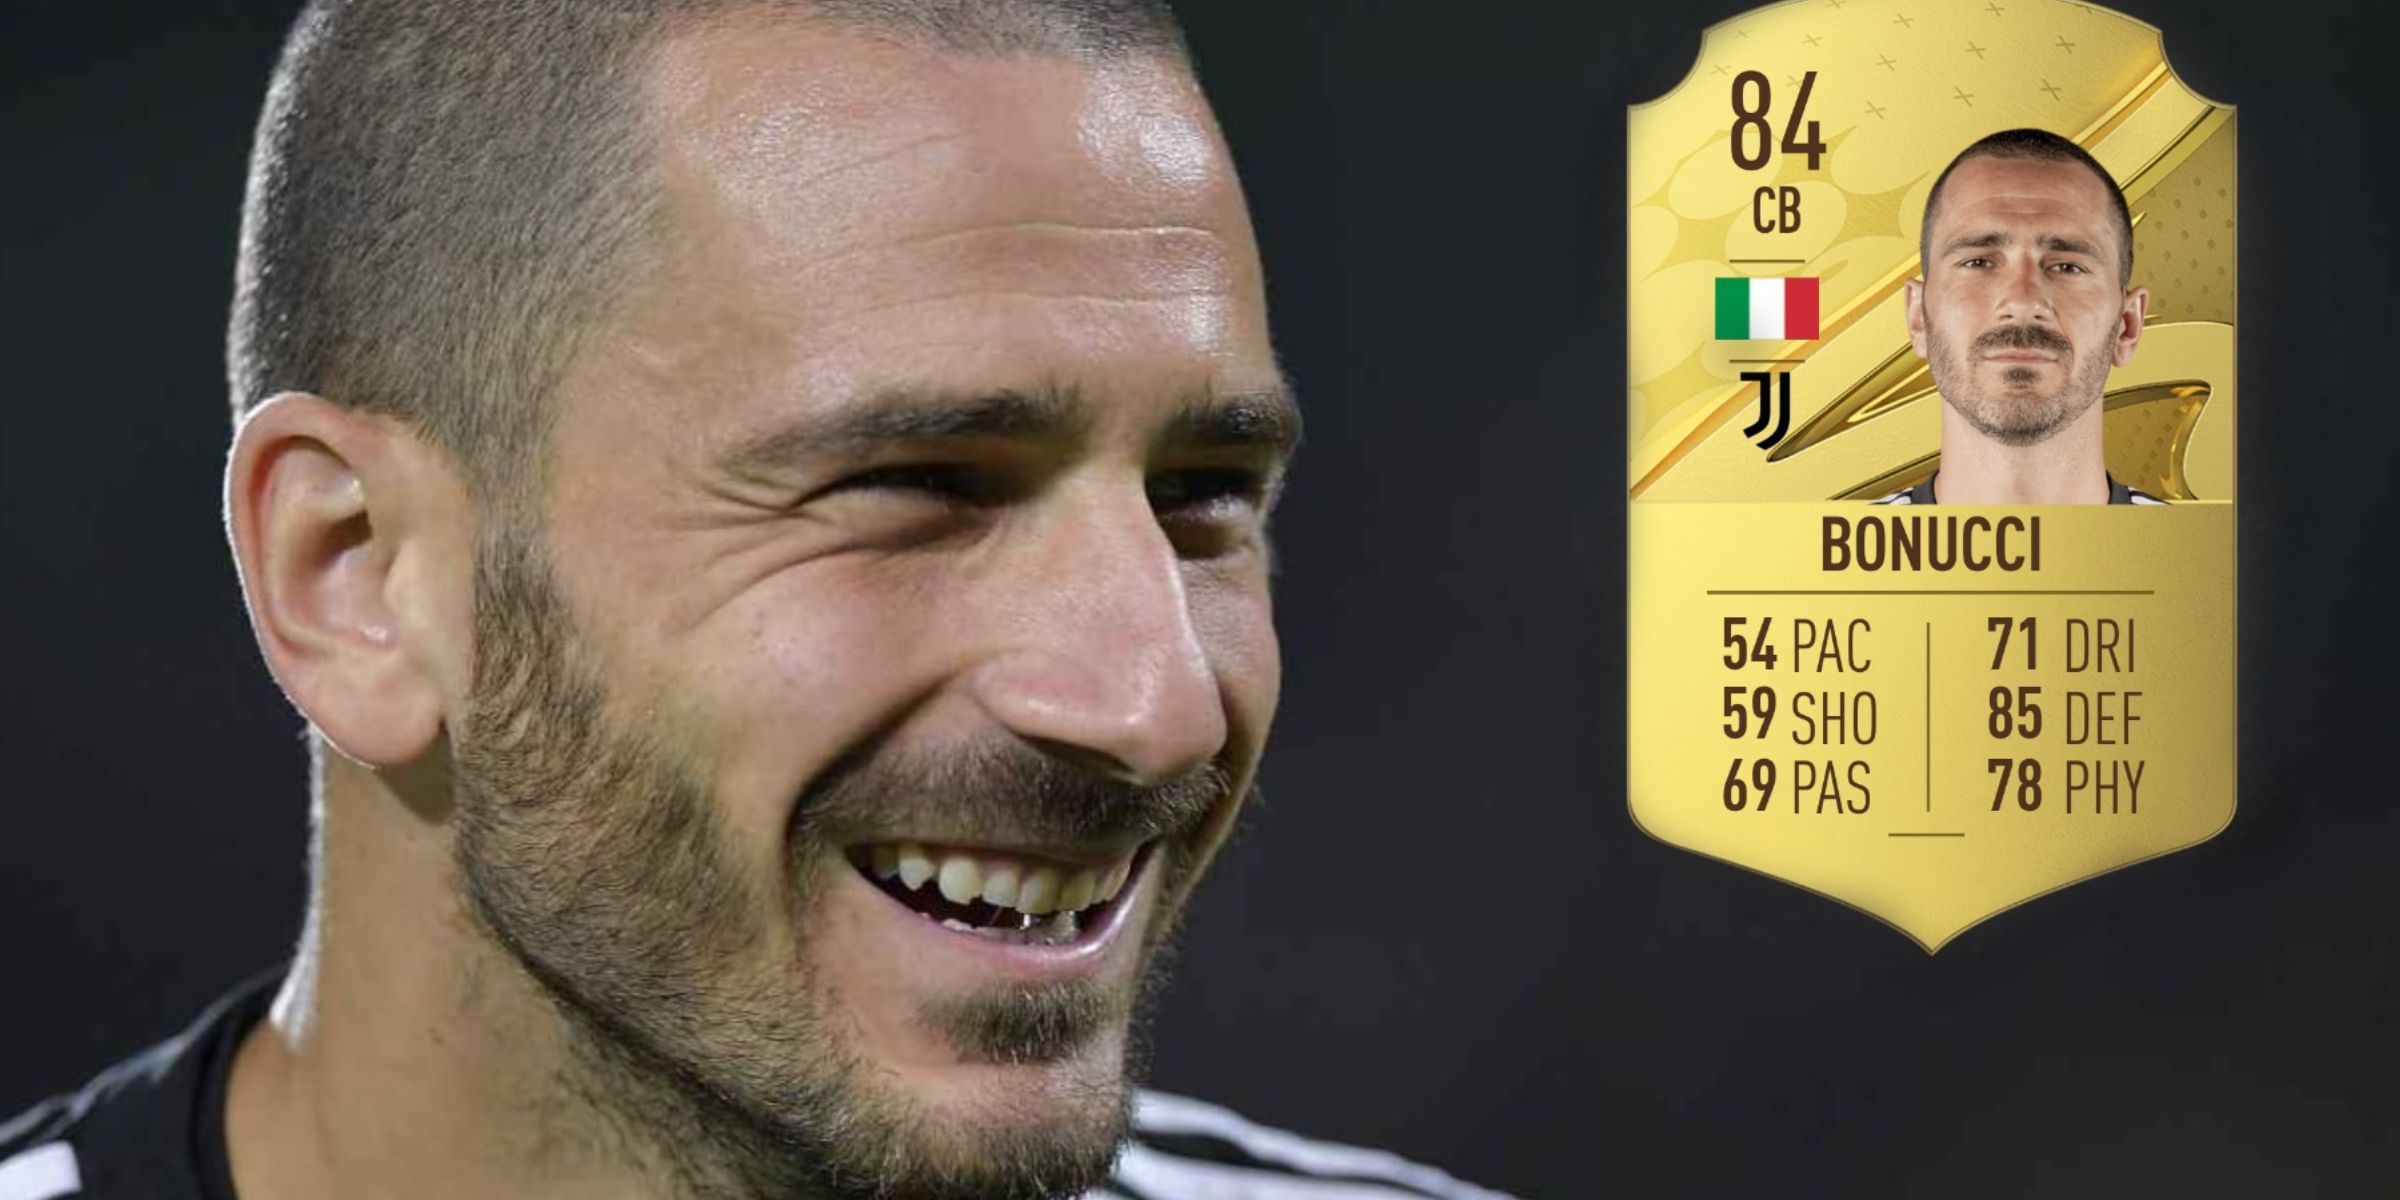 Bonucci FIFA 23 rating